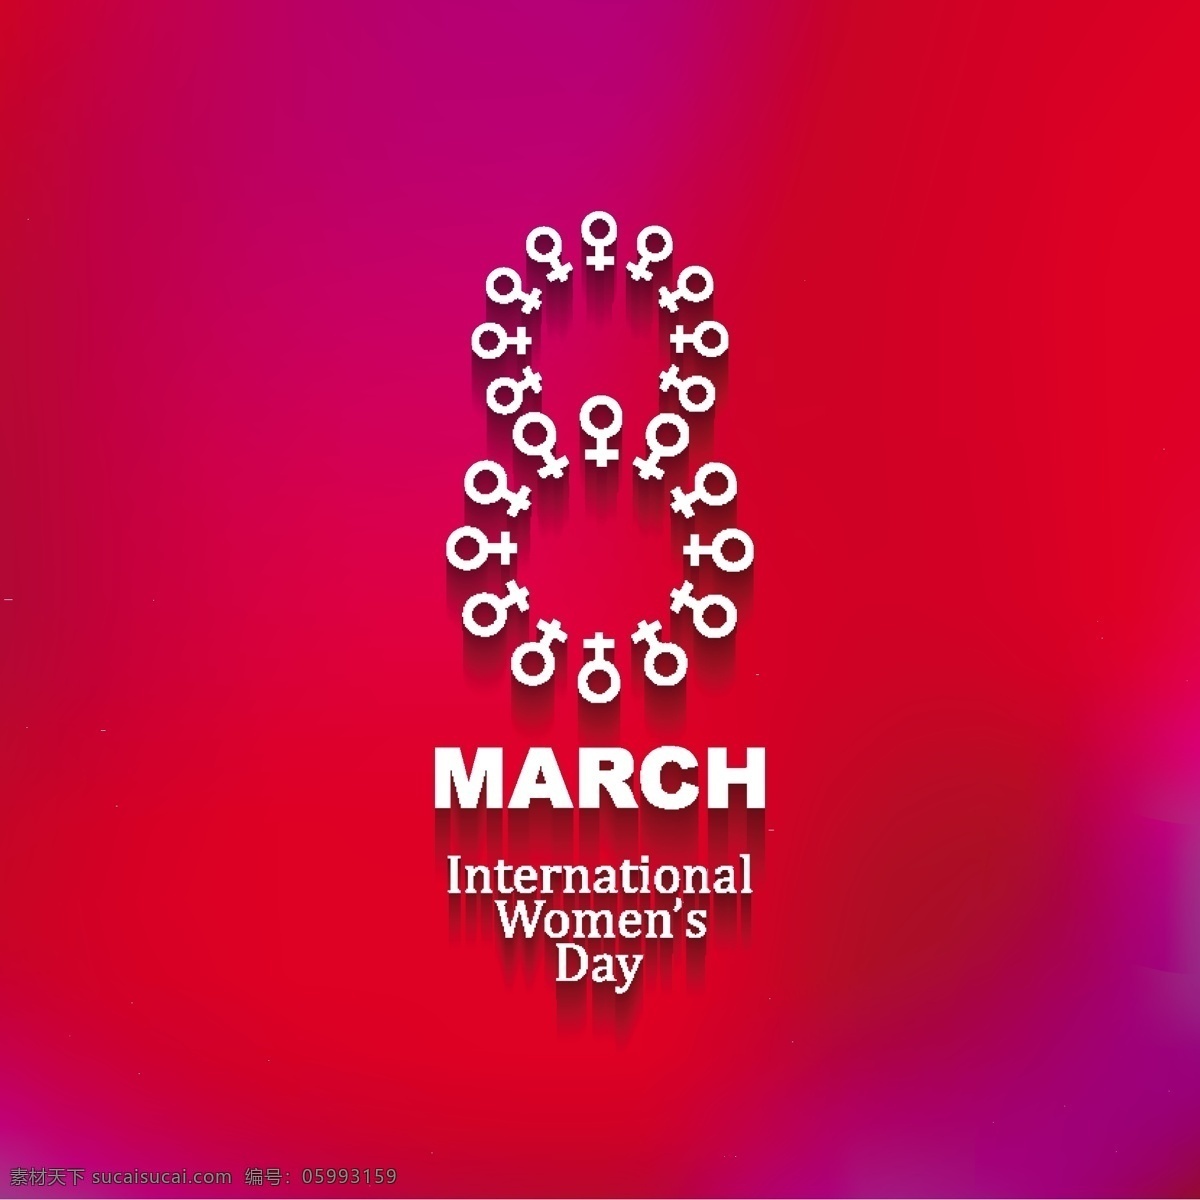 闪亮 国际妇女节 背景 抽象 卡 壁纸 庆典 优雅 事件 节日 丰富多彩的 现代的 粉红色的背景 丰富多彩 夫人 自由 女 庆祝 贺卡 女人的一天